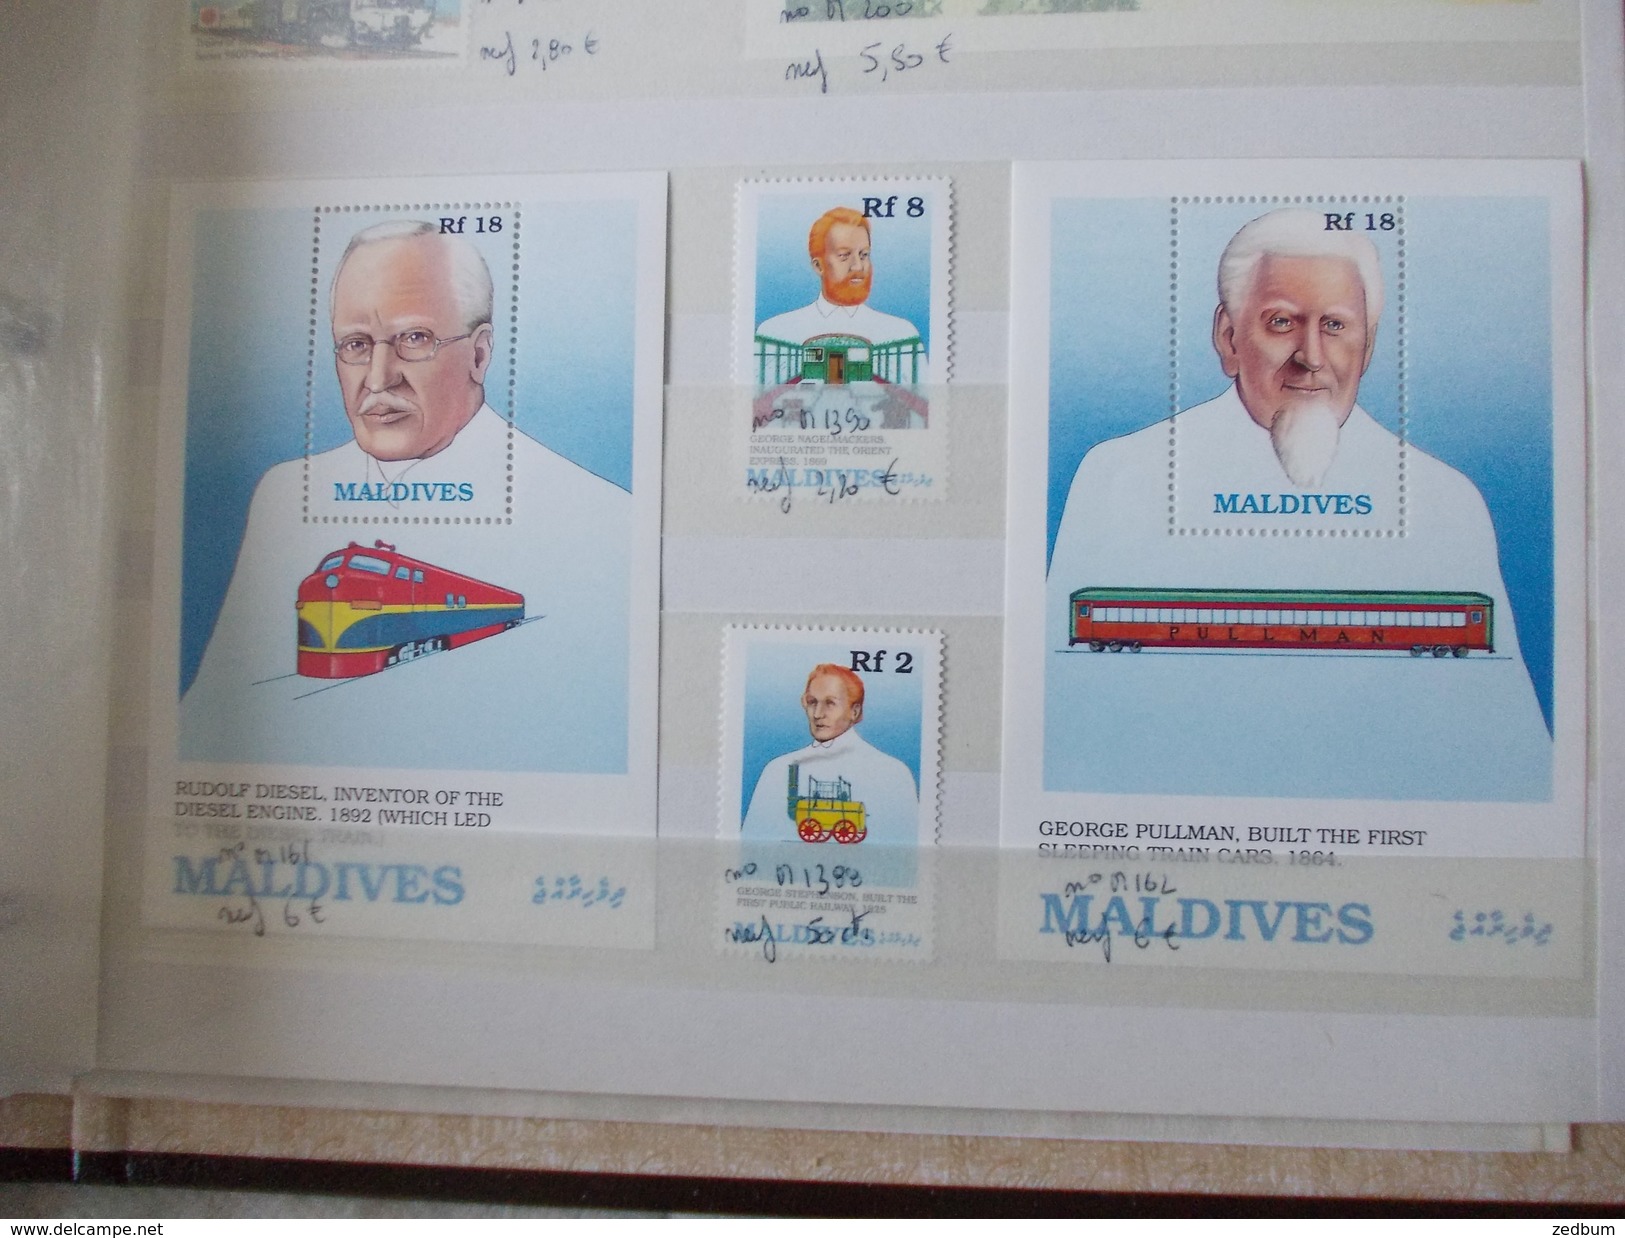 ALBUM 6 collection de timbres avec pour thème le chemin de fer train de tout pays valeur 344.55 &euro;